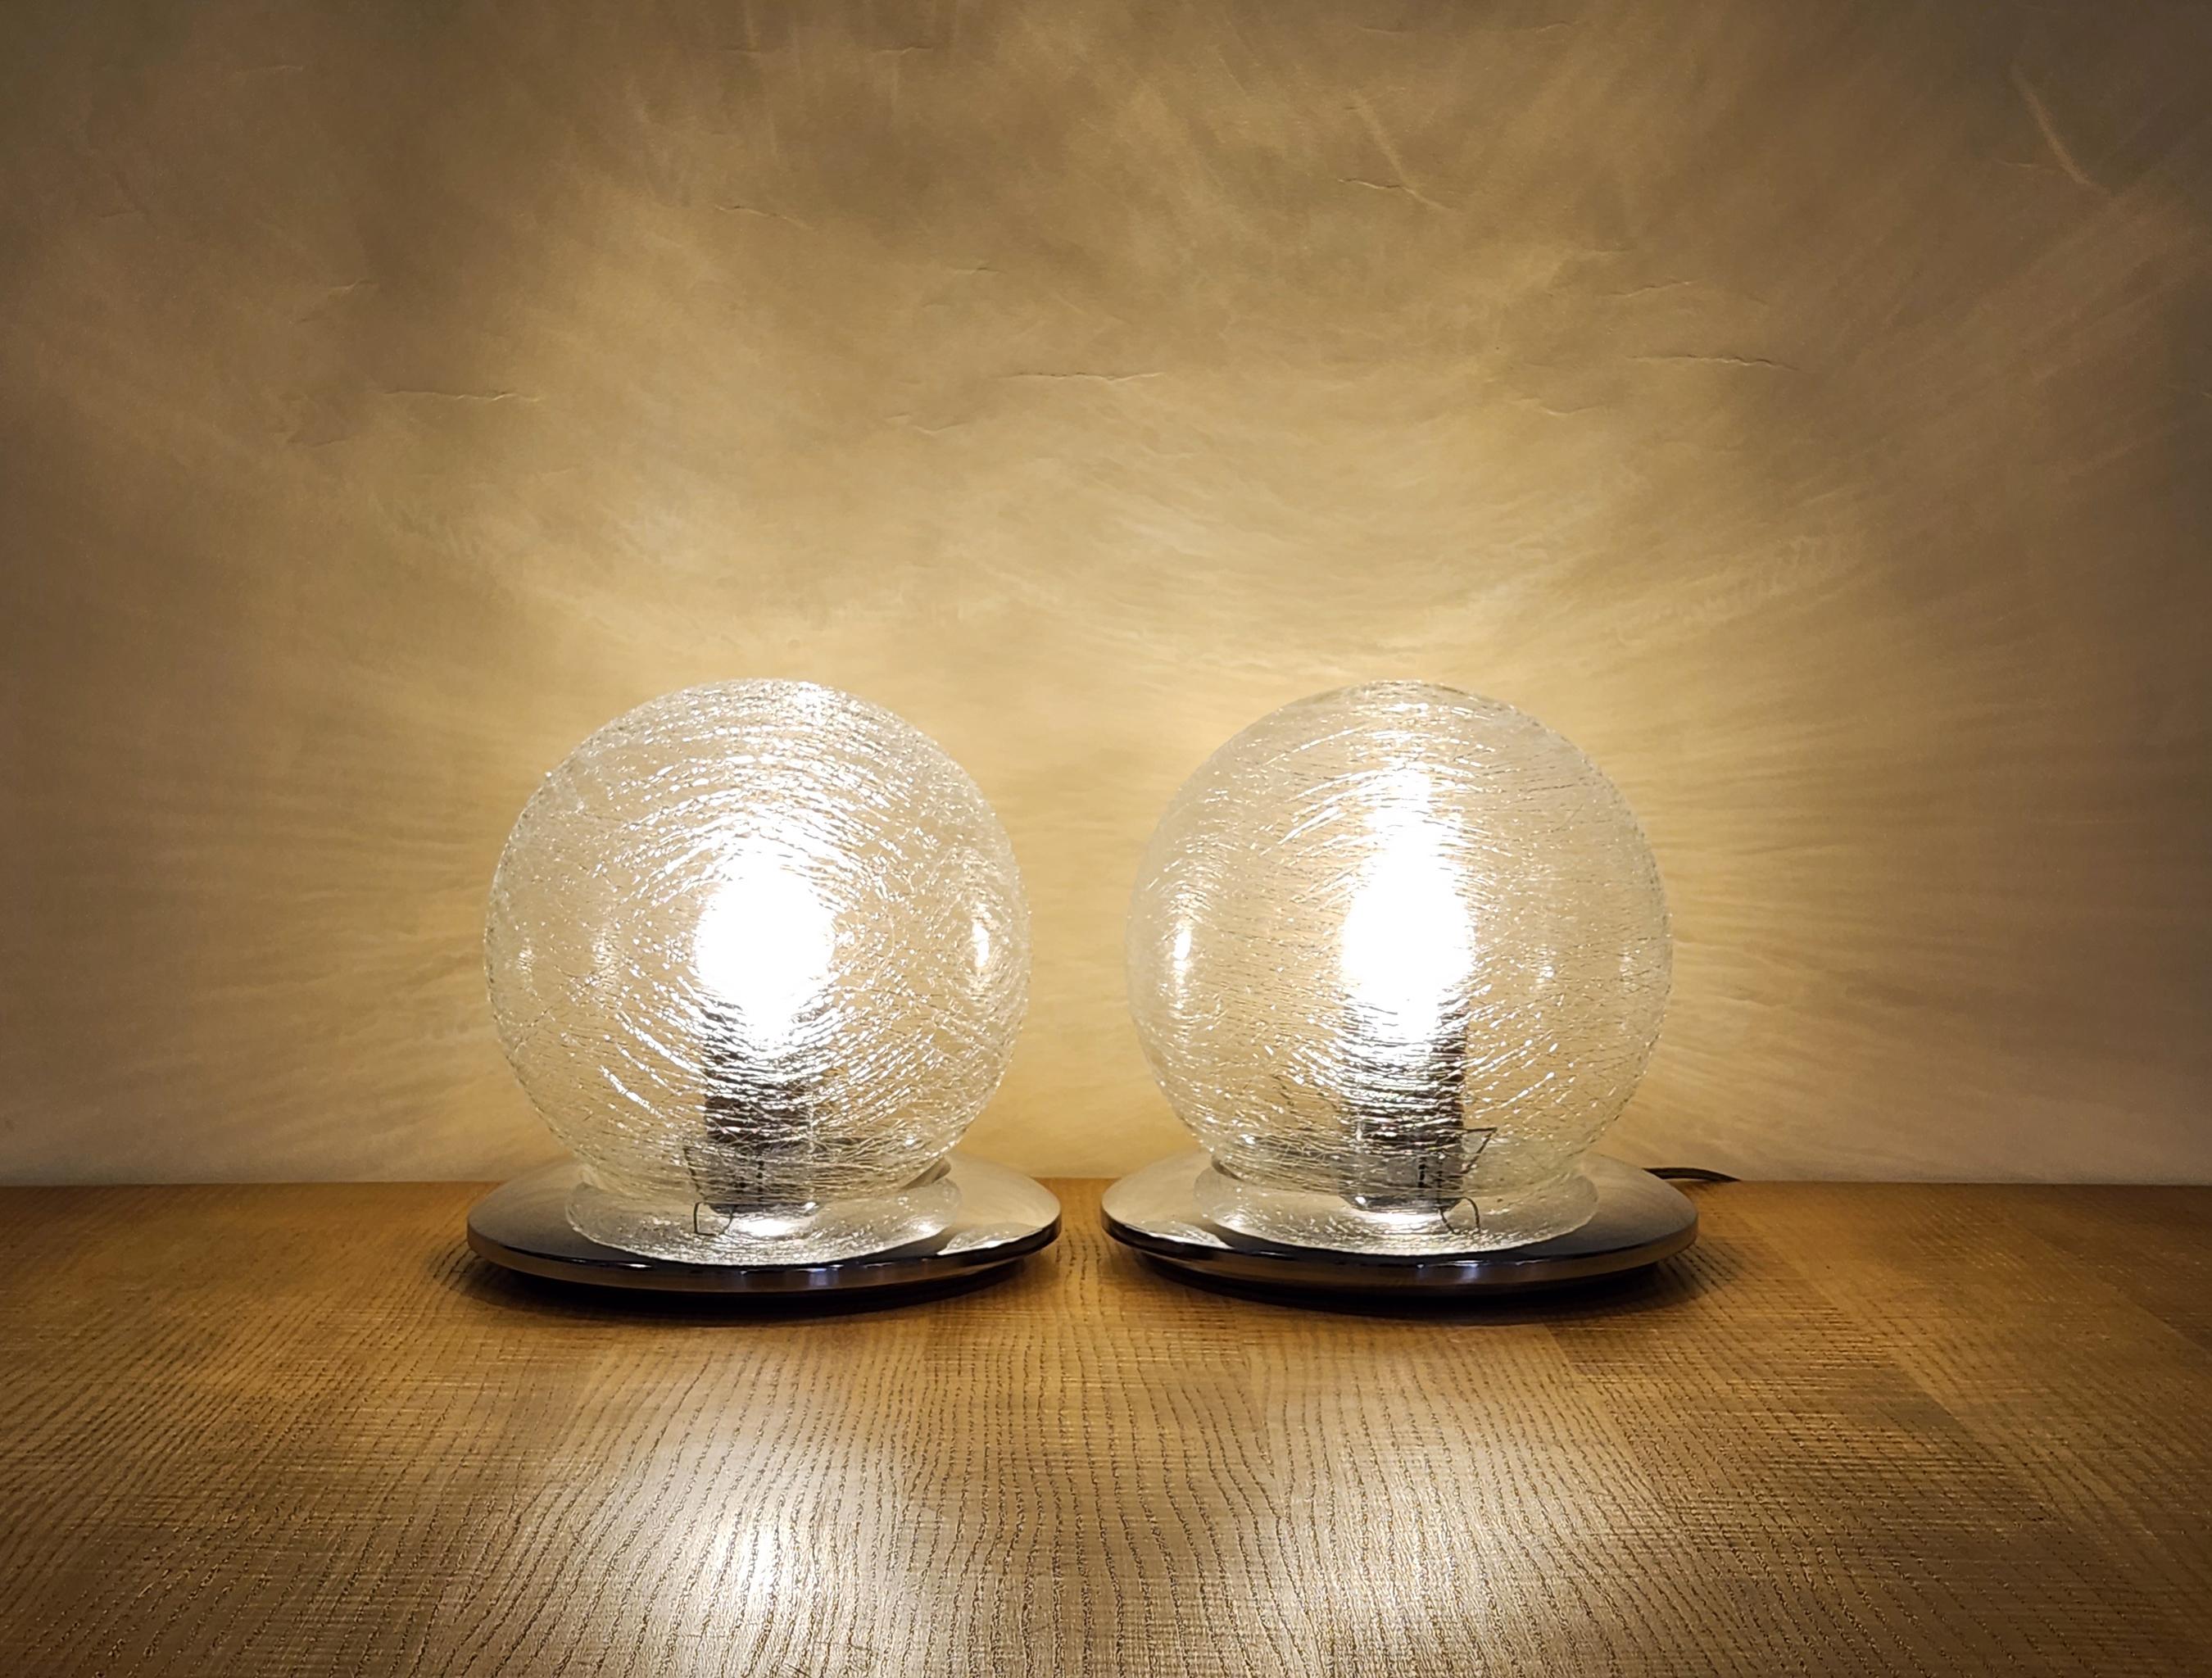 Paire de lampes de table sphériques en verre de Murano, originaires d'Italie, vers 1970. Chaque lampe se compose d'un globe de verre posé sur une base métallique. Le verre a été soufflé à la main et présente un effet de texture fibreuse. Élégant et